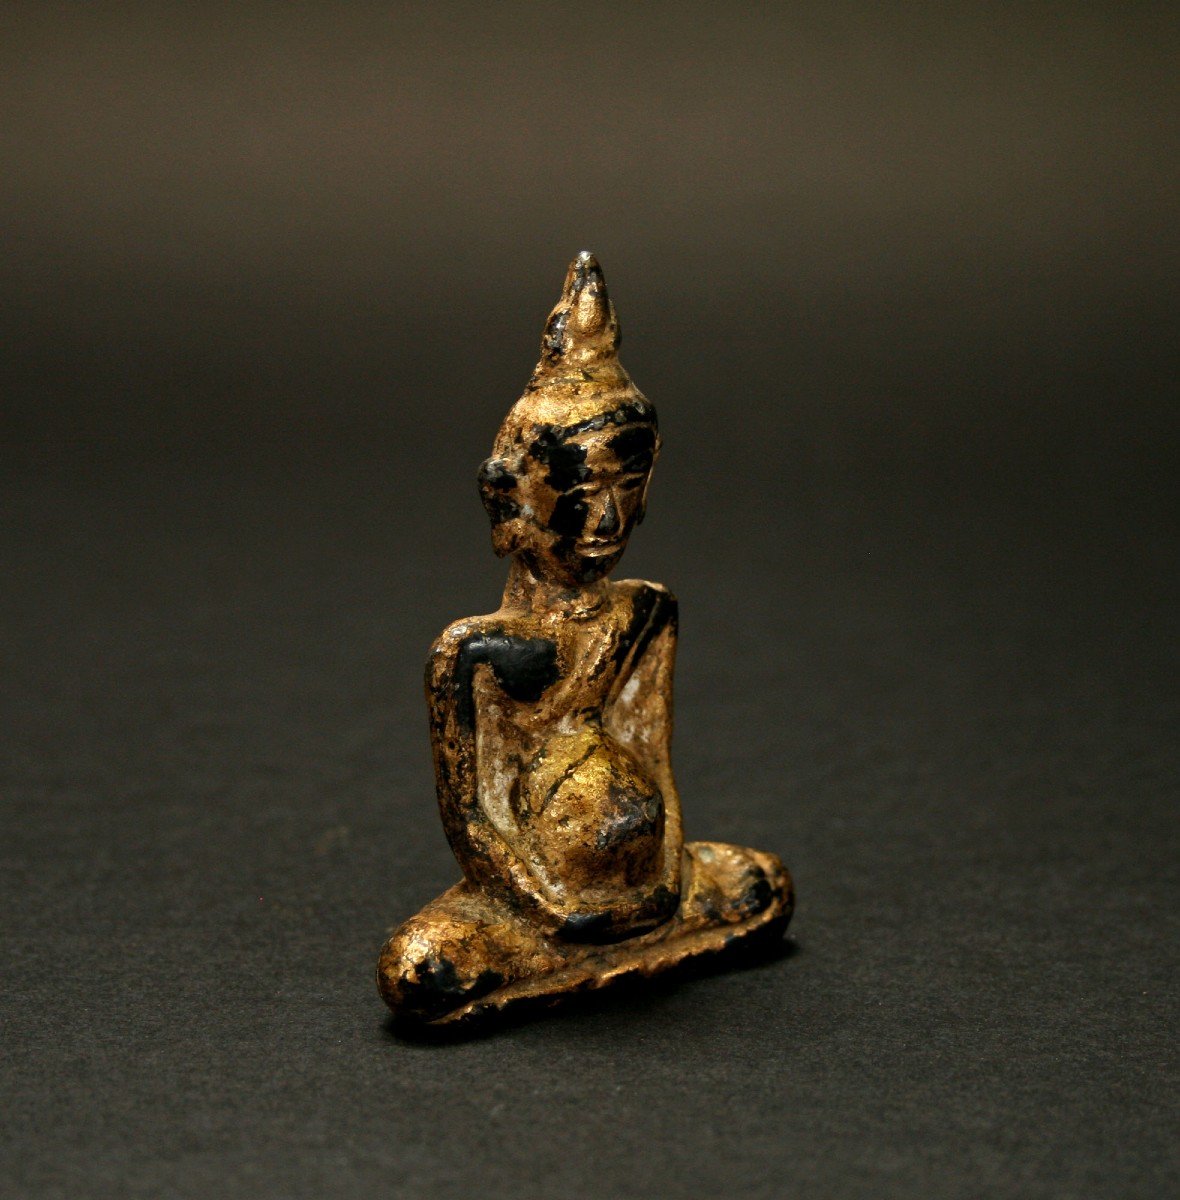 Bouddha Ancien En Bronze Doré - Rare Il A l'Air Enceinte !